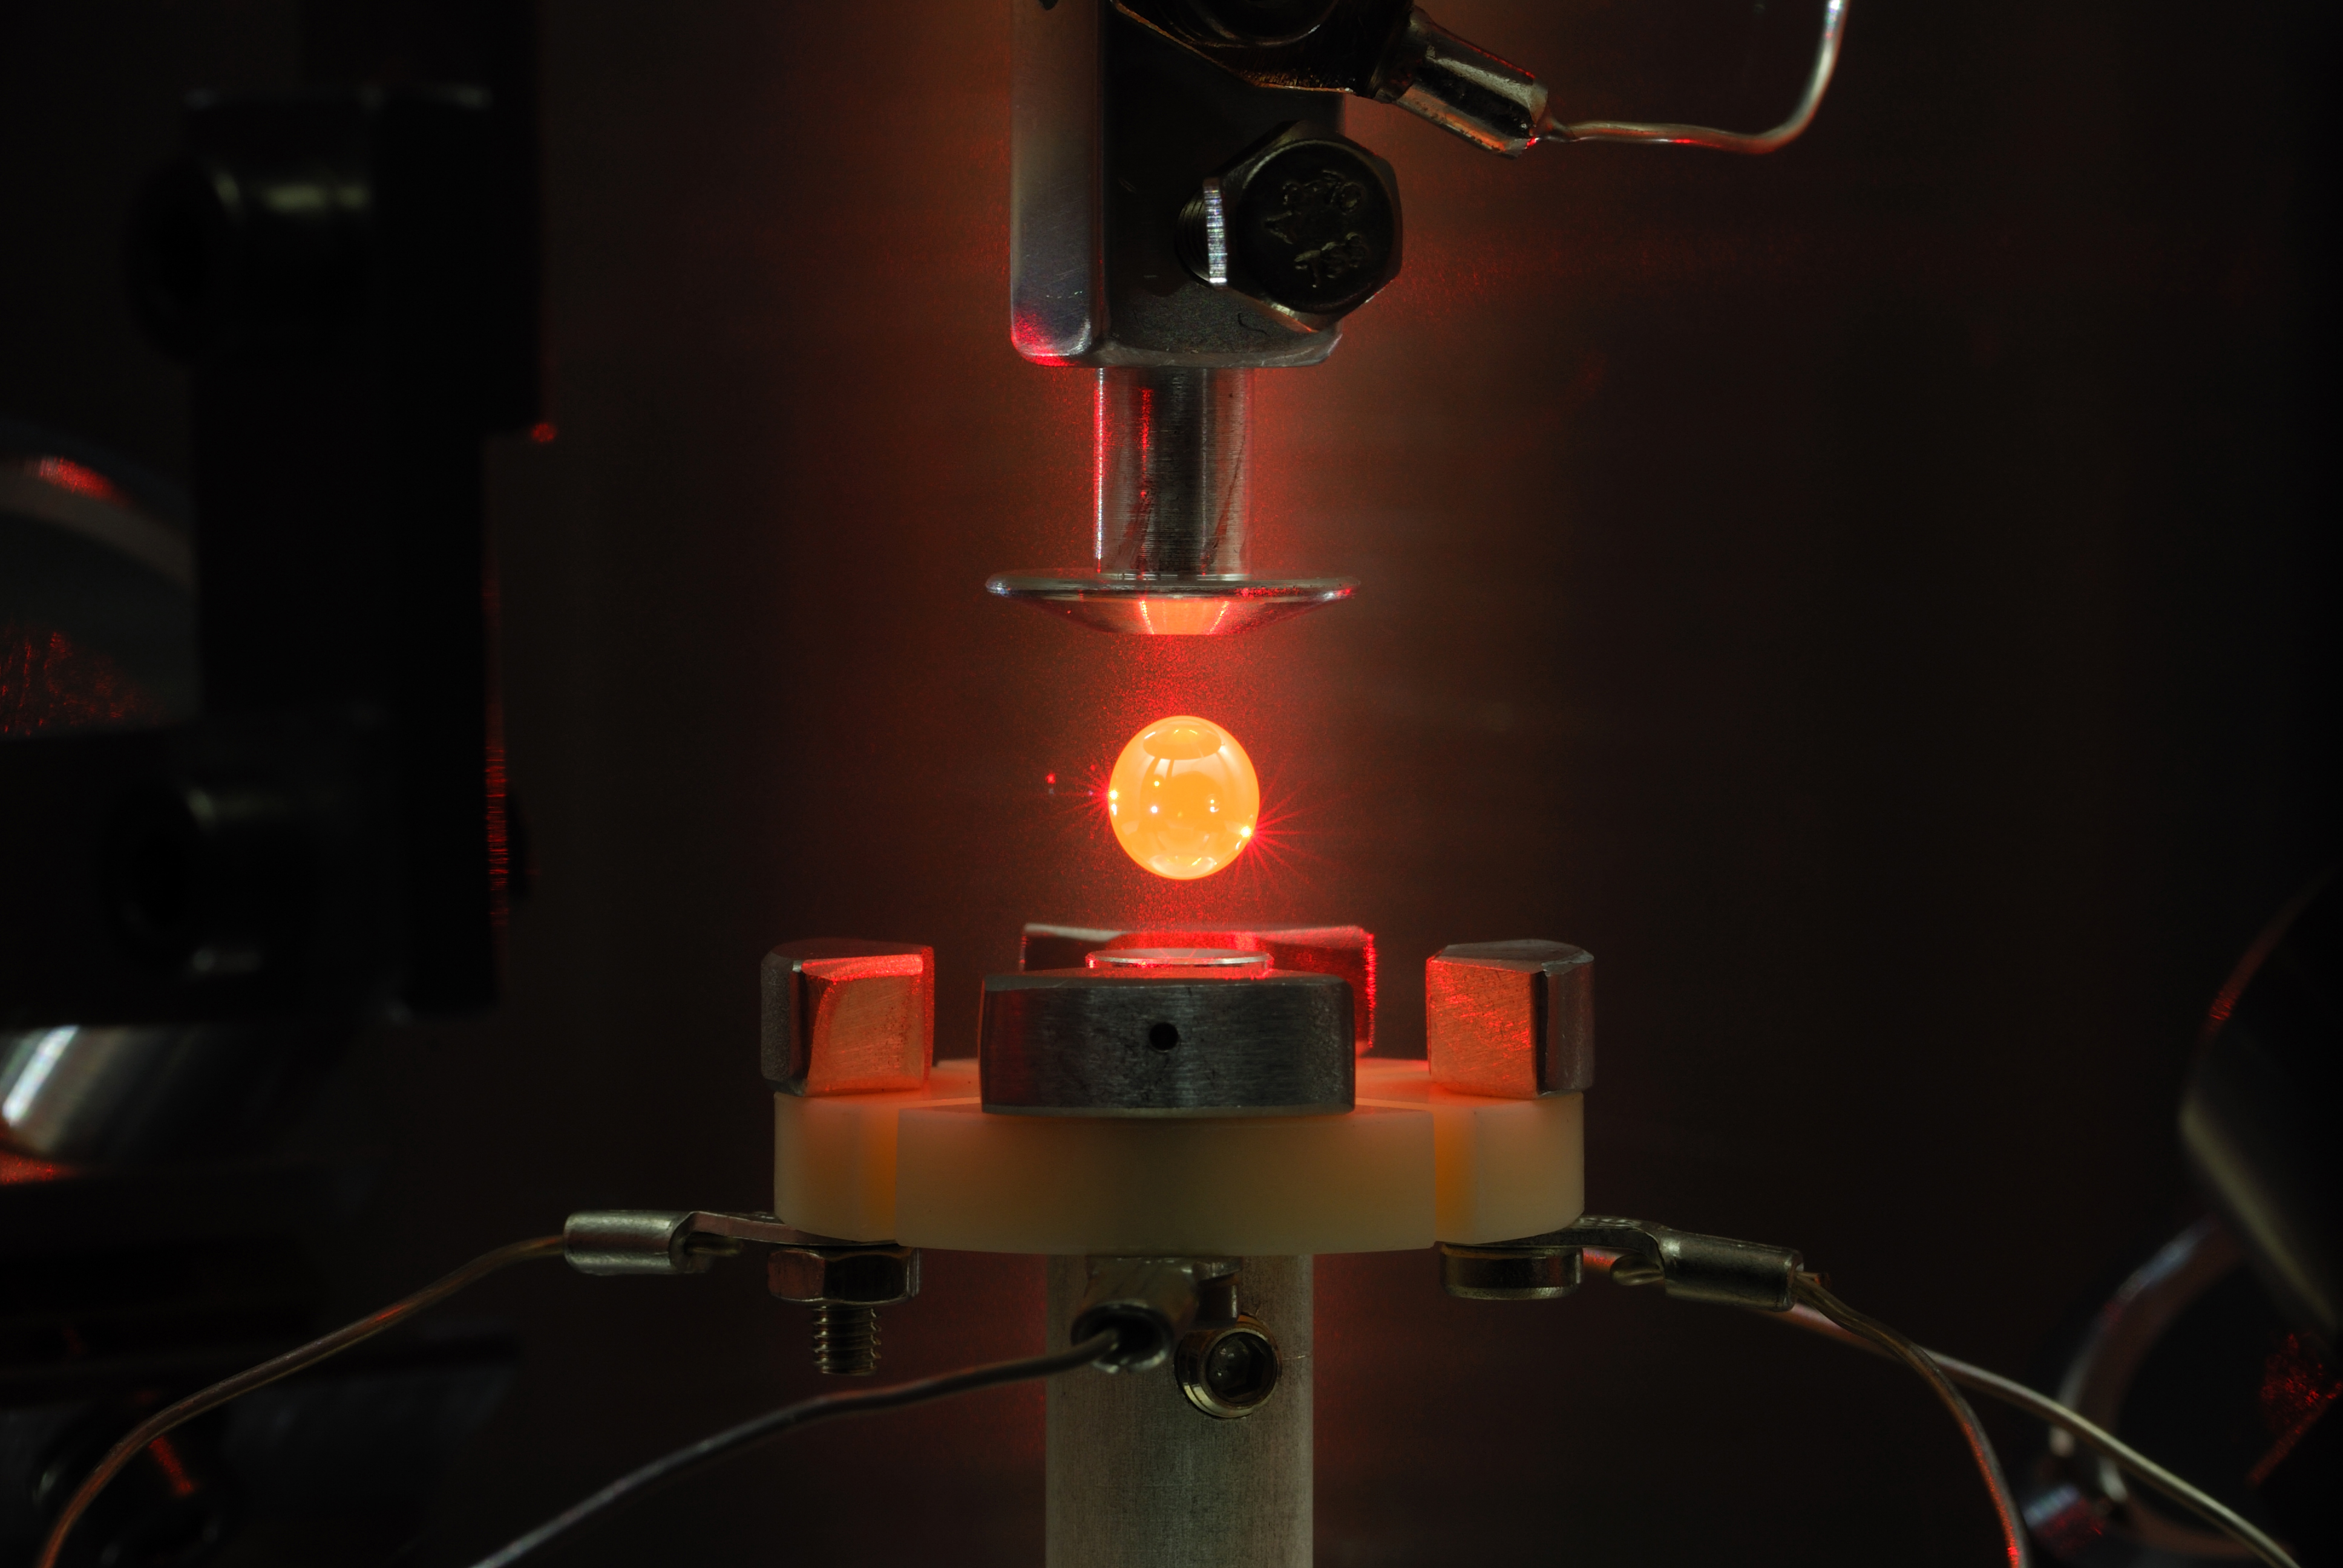 mlz massiver dynamik untersucht gläser mikroskopische struktur metallischer